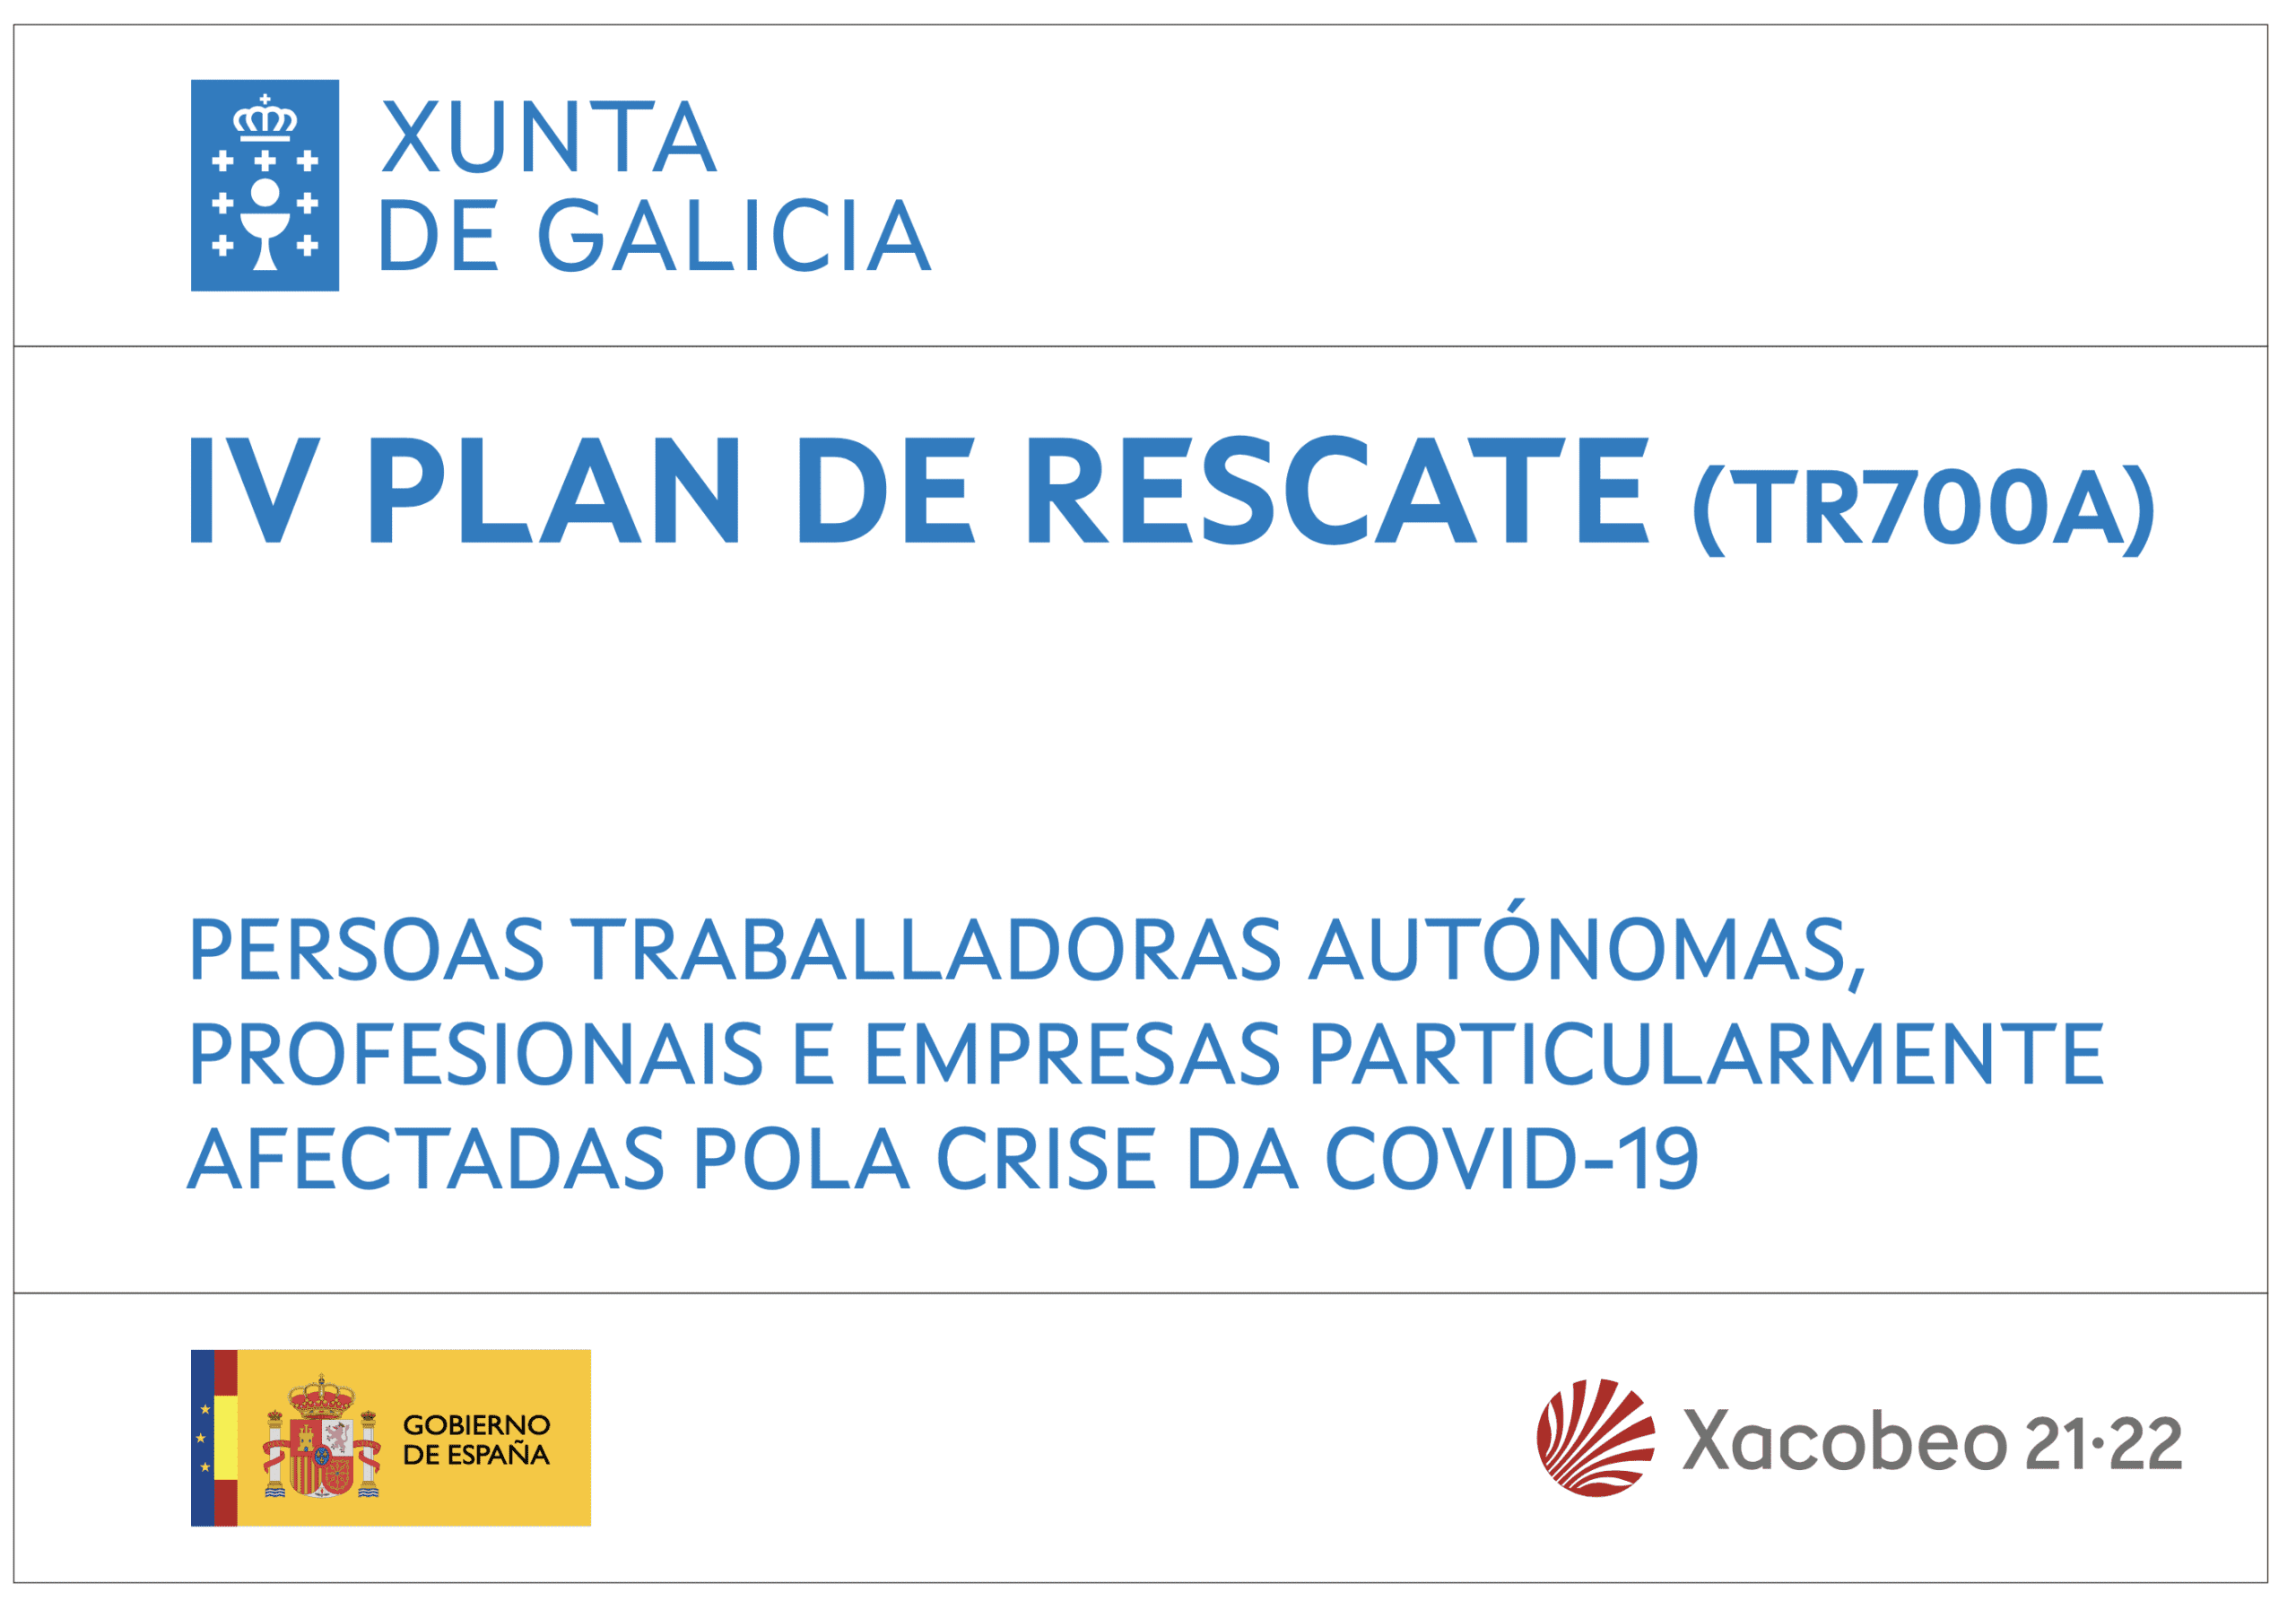 IV PLAN DE RESCATE (TR700A) XUNTA